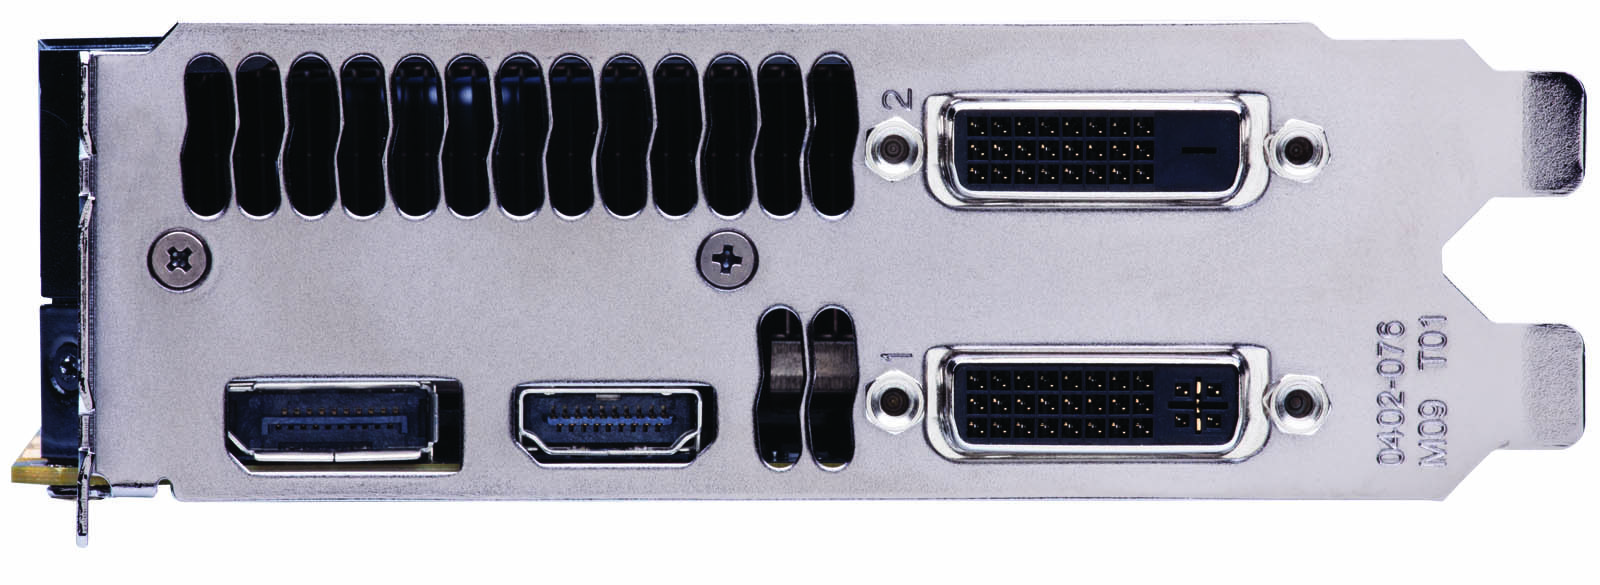 nVIDIA GTX 680 : panel